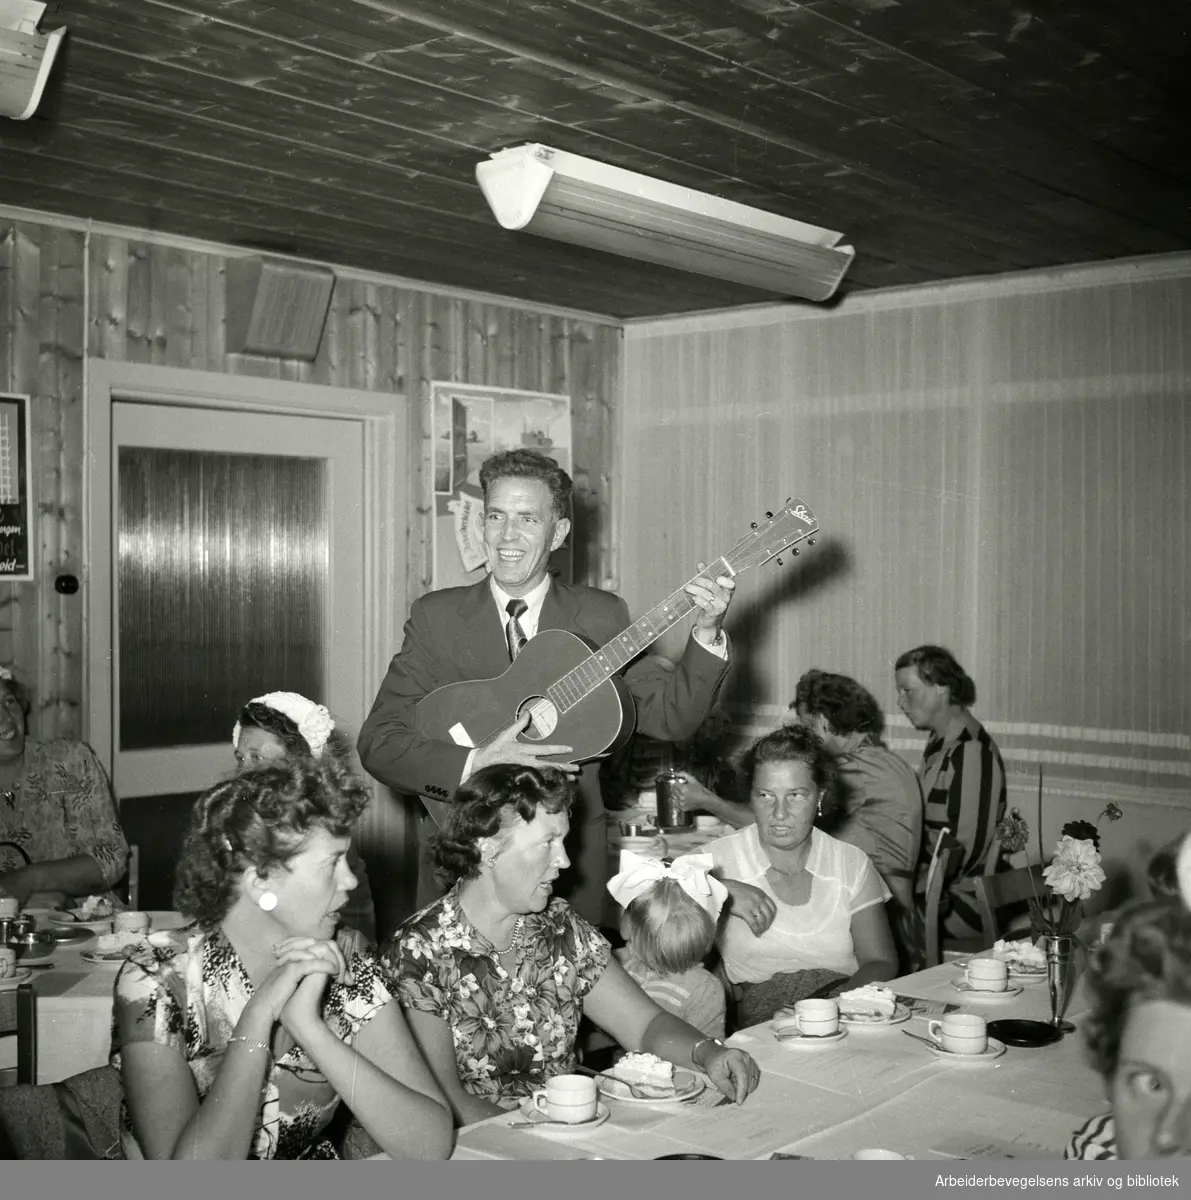 Arbeiderbladets husmortimer på Helsfyr hotel i Oslo. Tryggve Aakervik (1917-2006) "Mannen med den røde gitar" synger og spiller. September 1955.